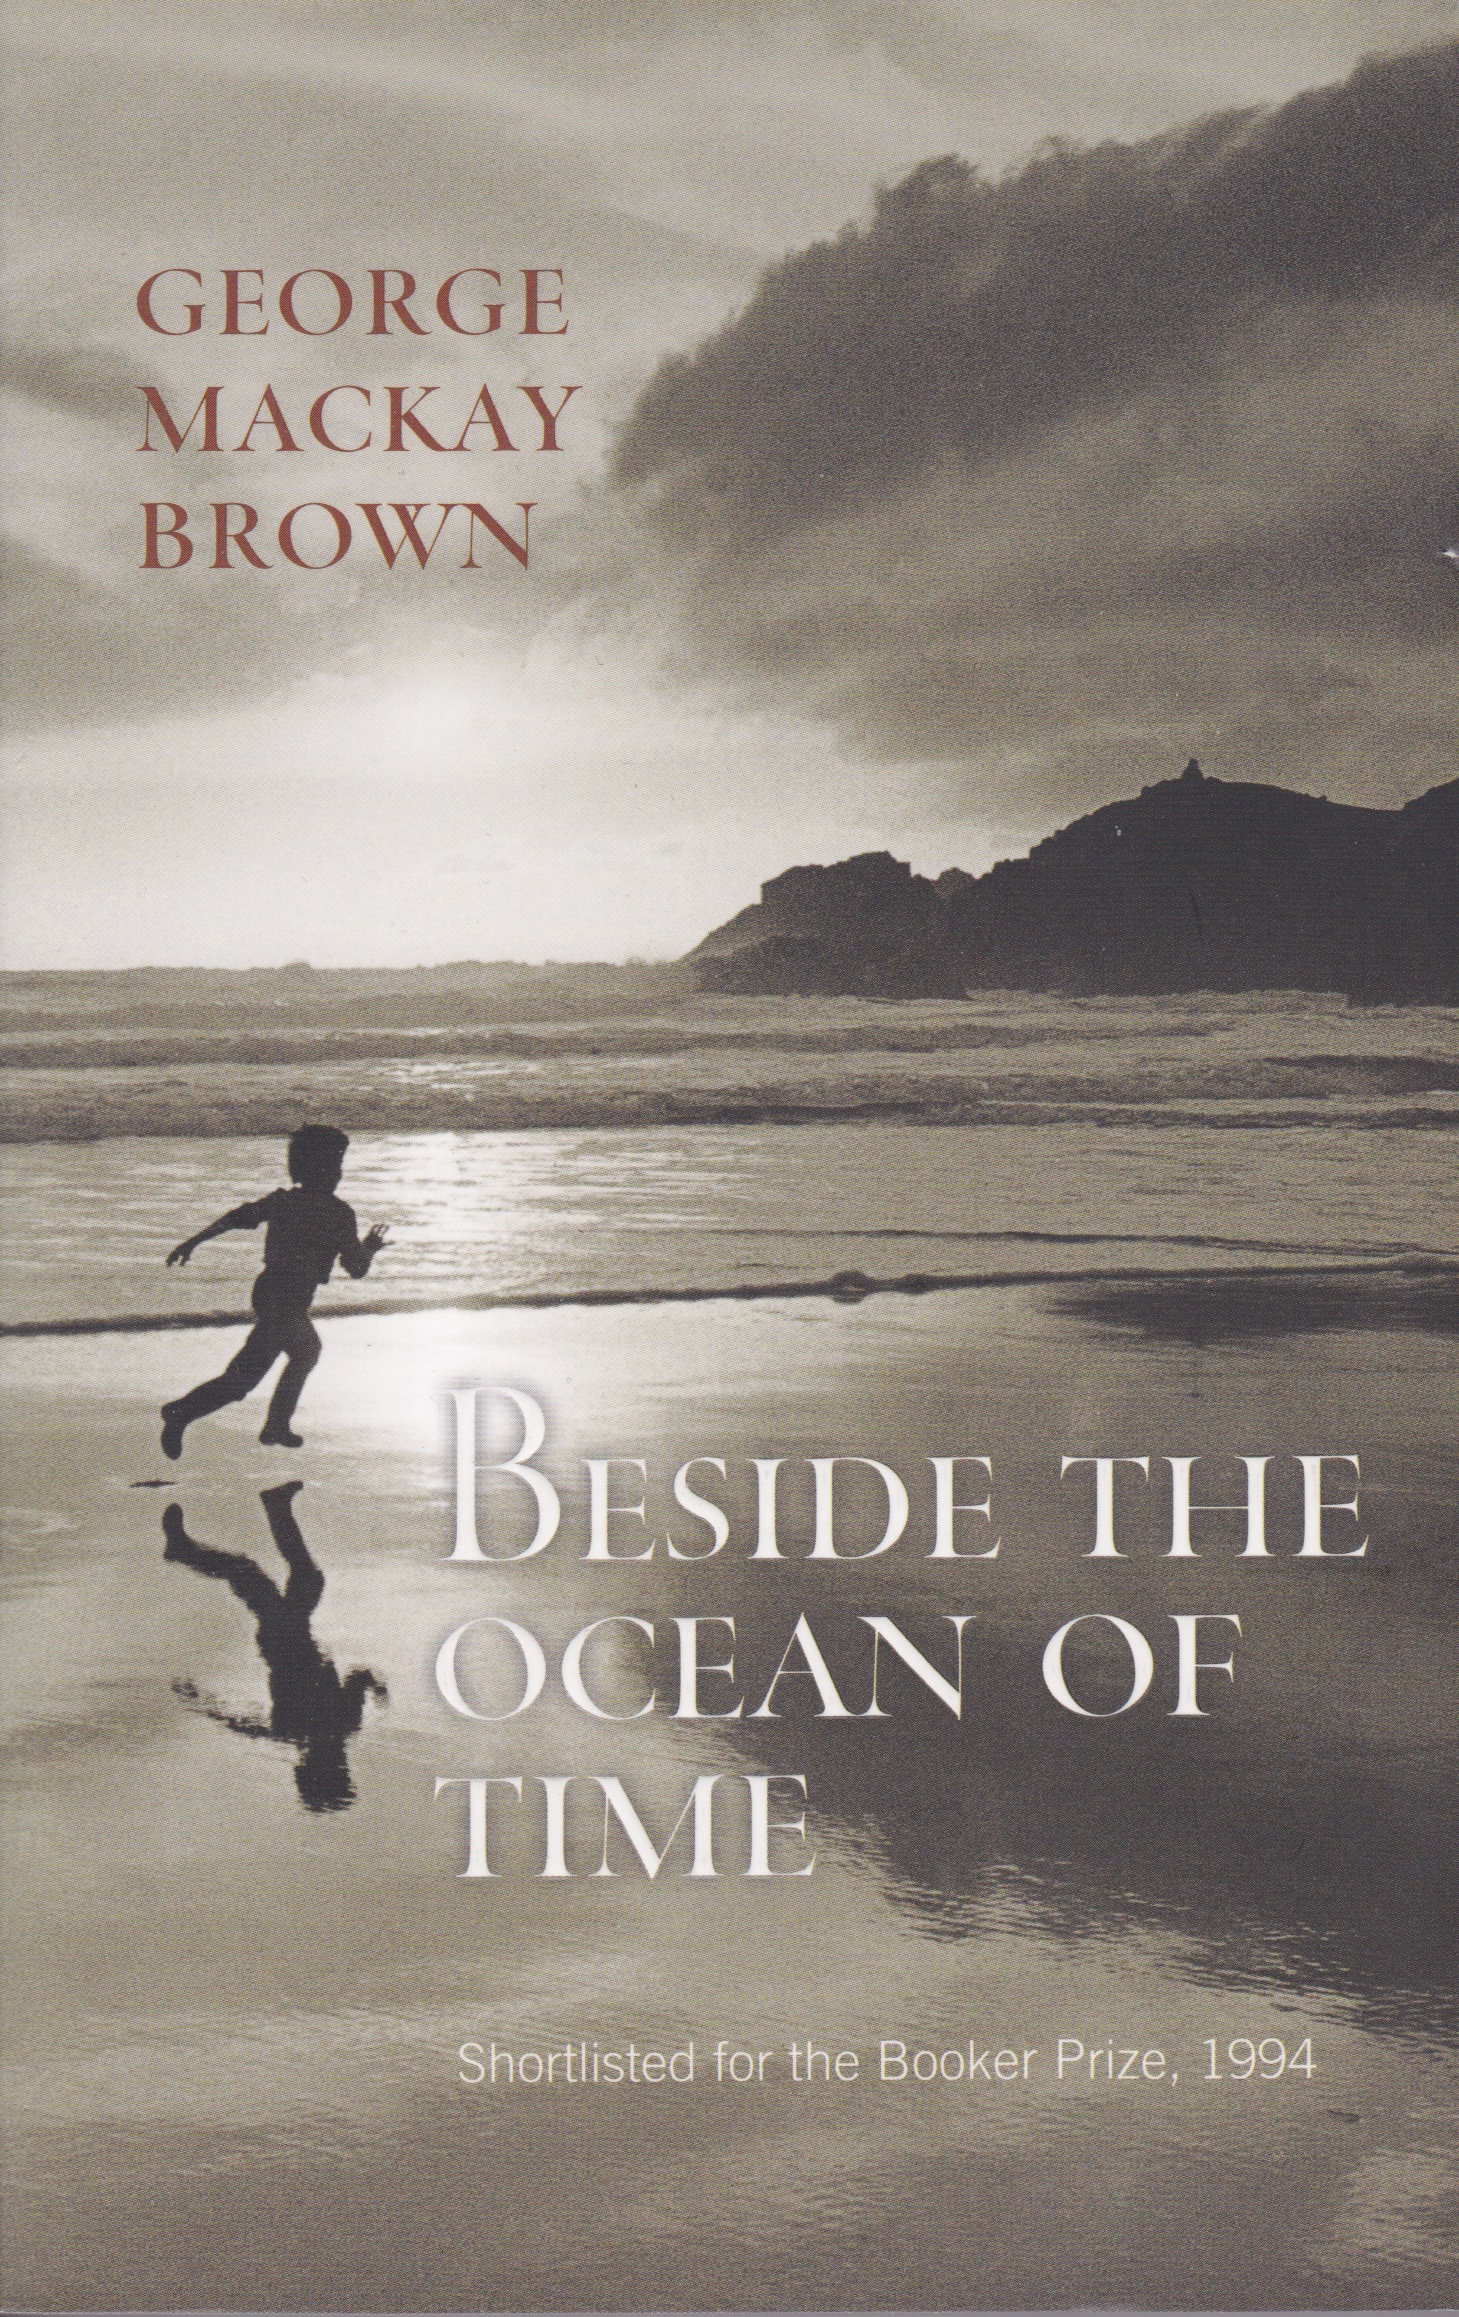 George Mackay Brown's Beside the Ocean of Time